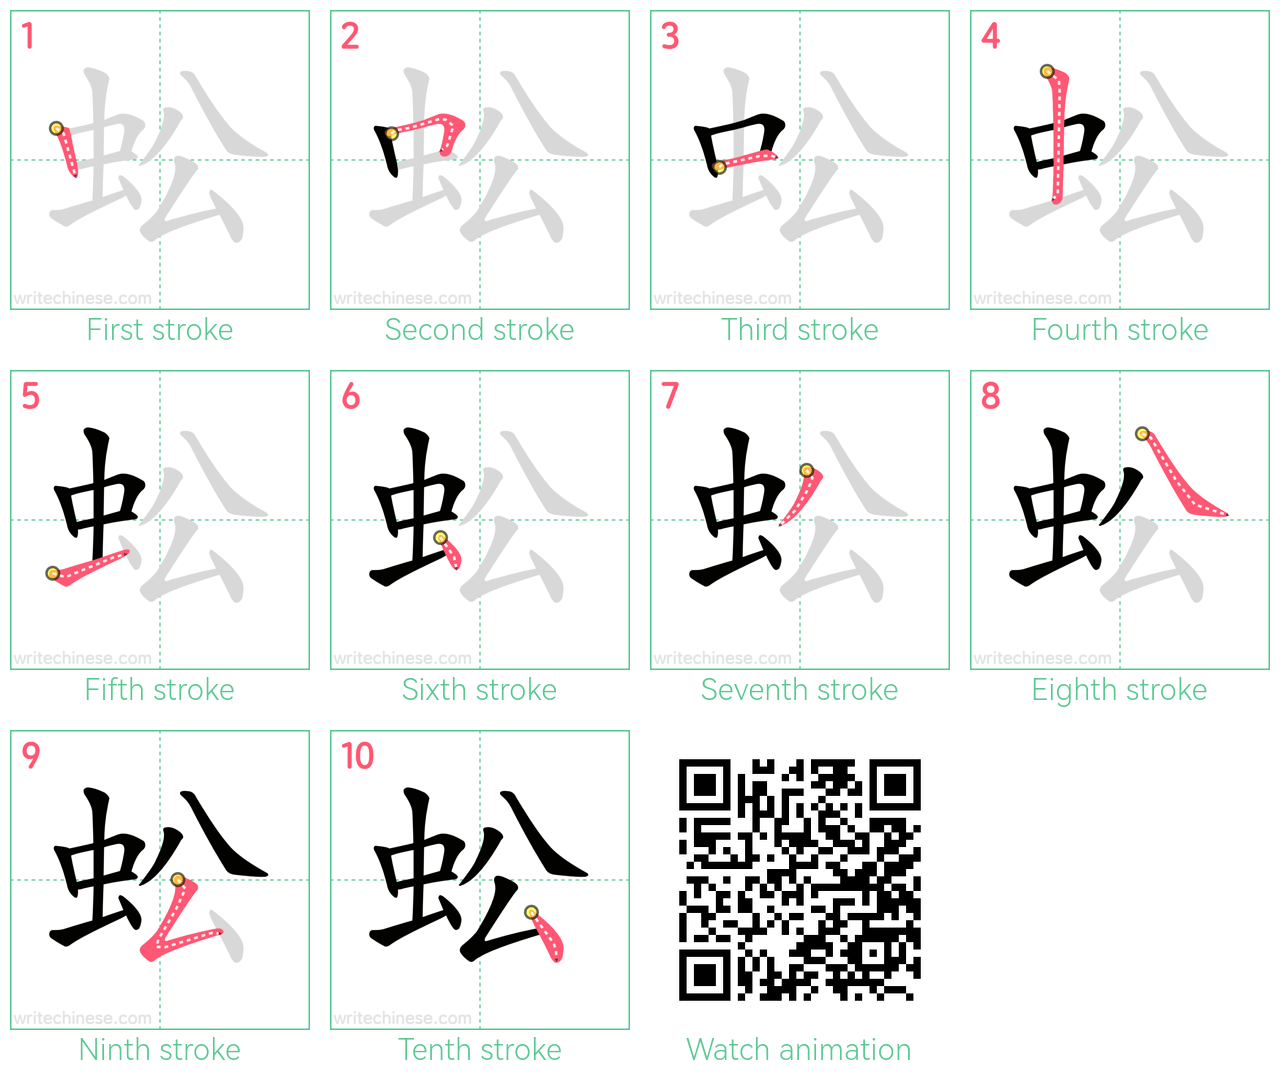 蚣 step-by-step stroke order diagrams